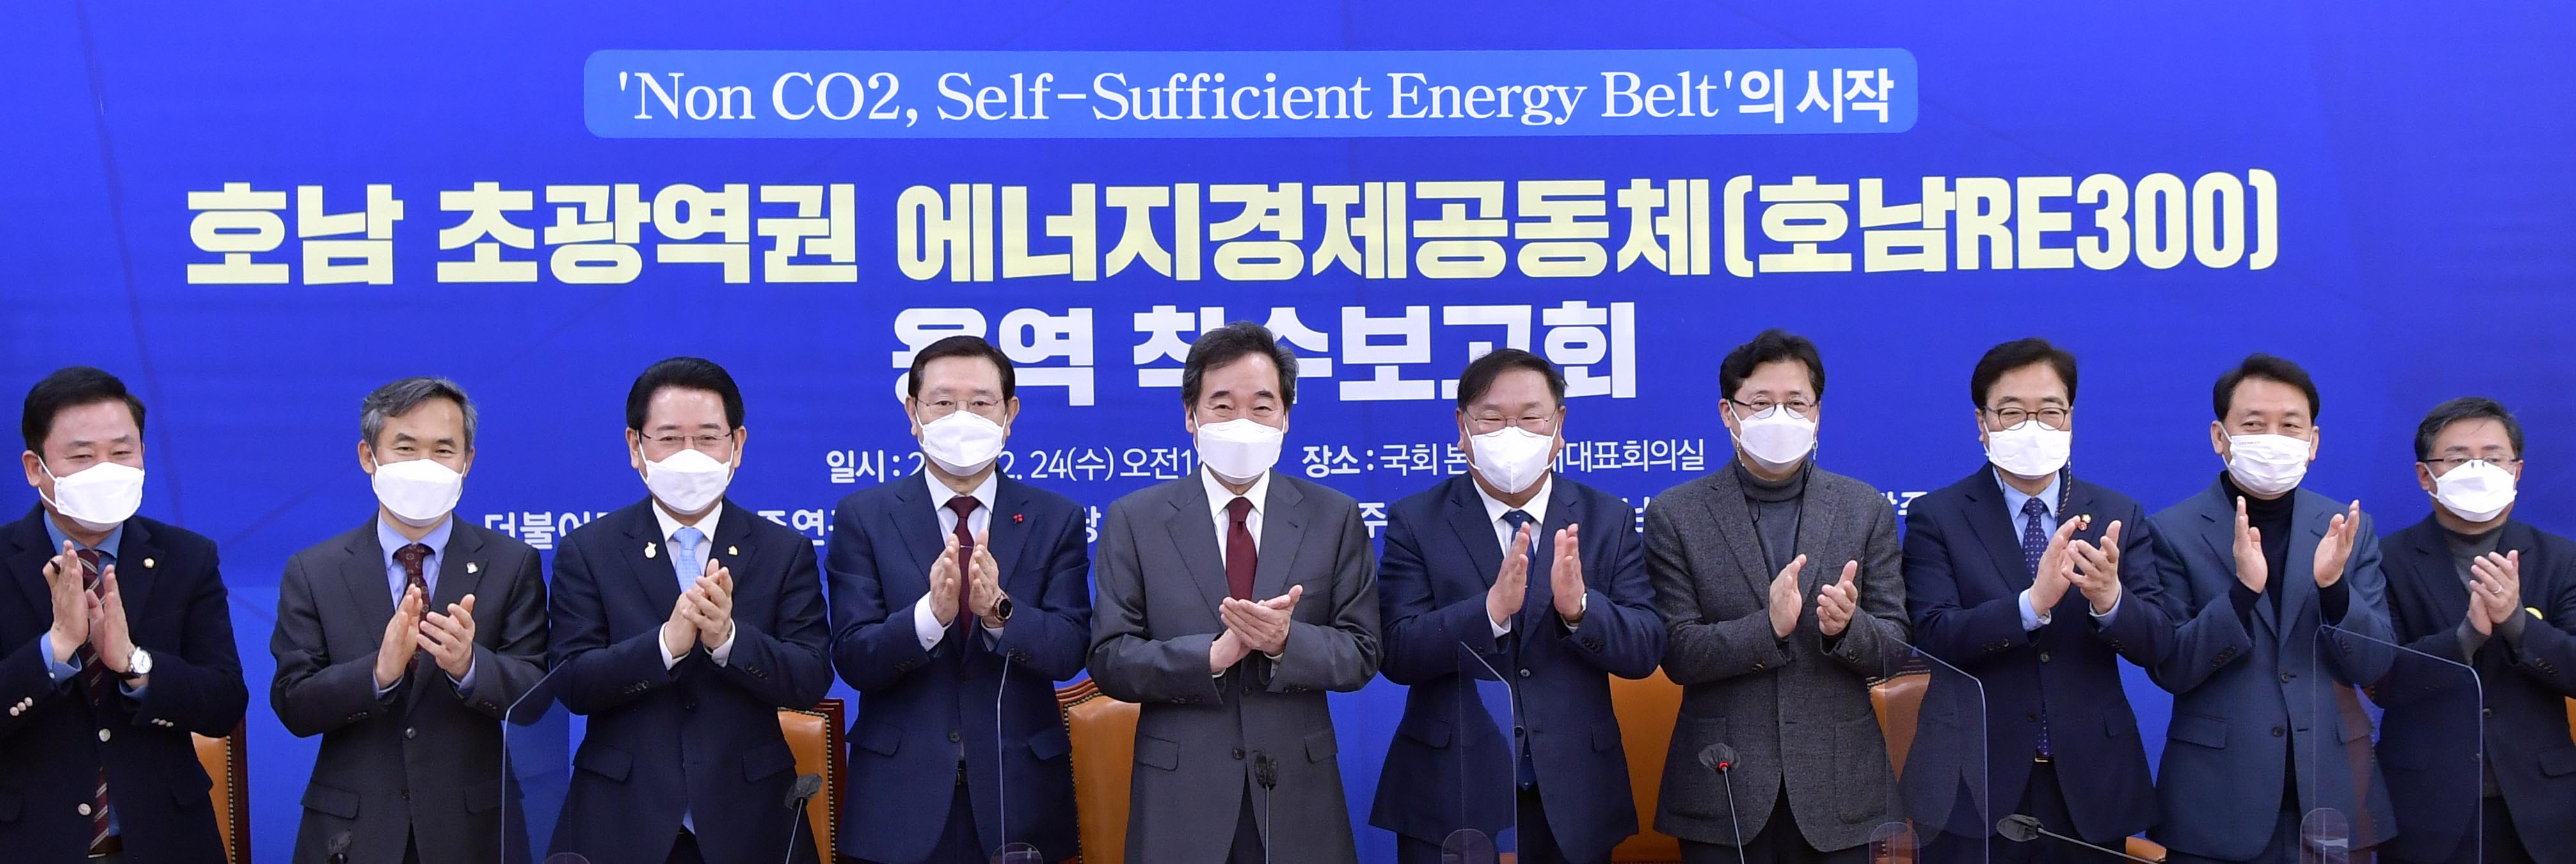 호남 초광역권 에너지경제공동체 '호남RE300' 용역 착수보고회3